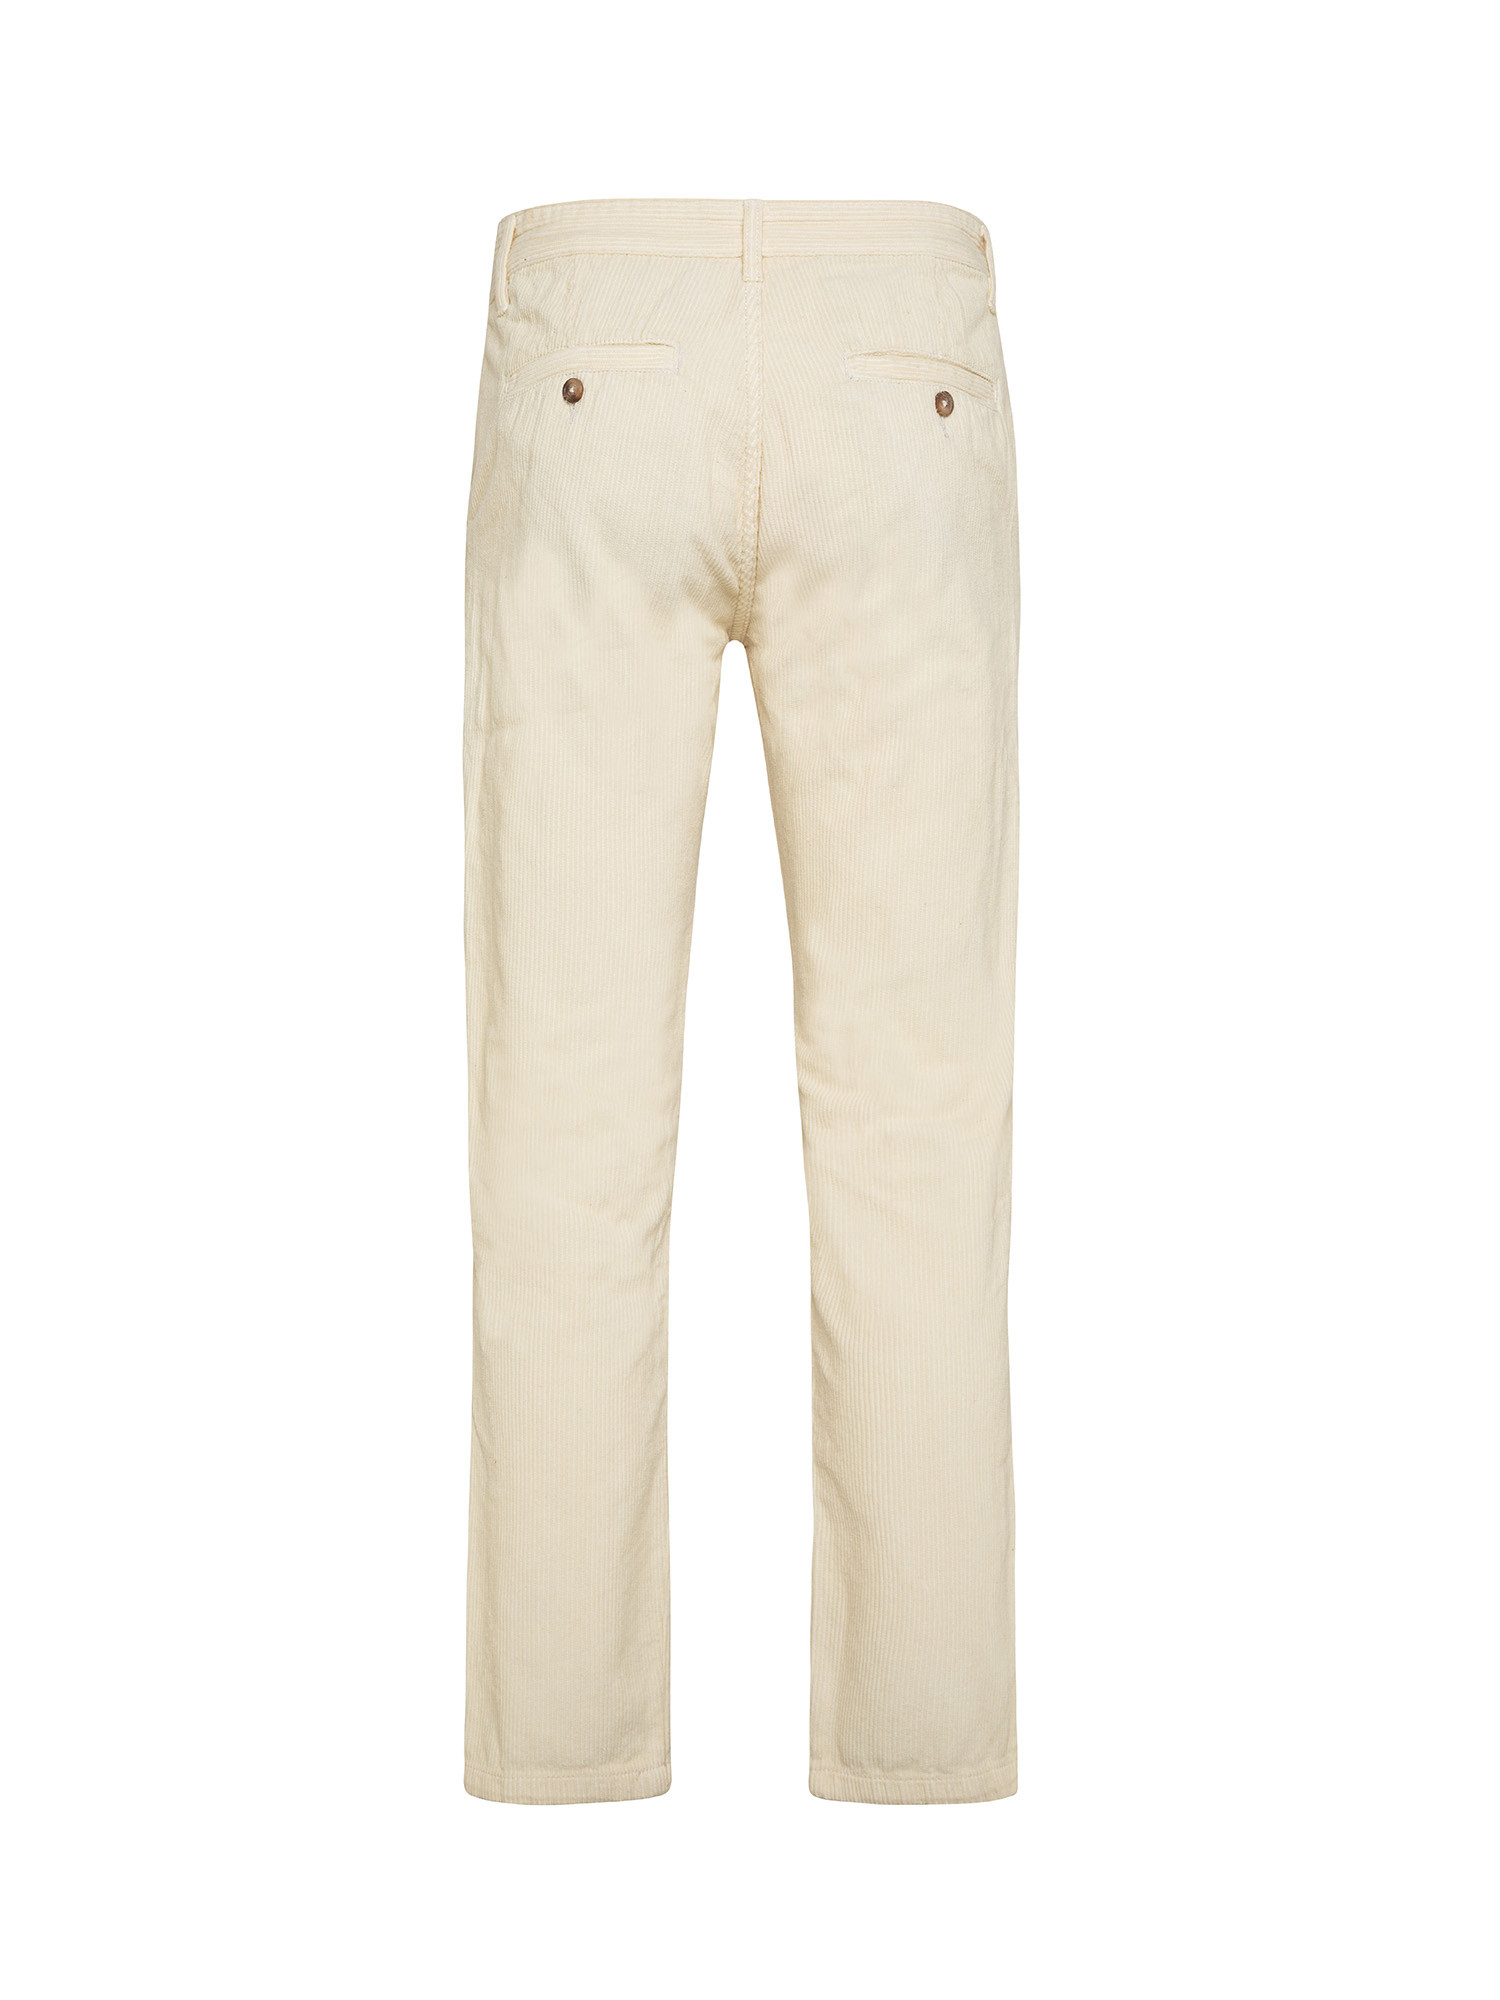 JCT - Velvet chino trousers, White Milk, large image number 1